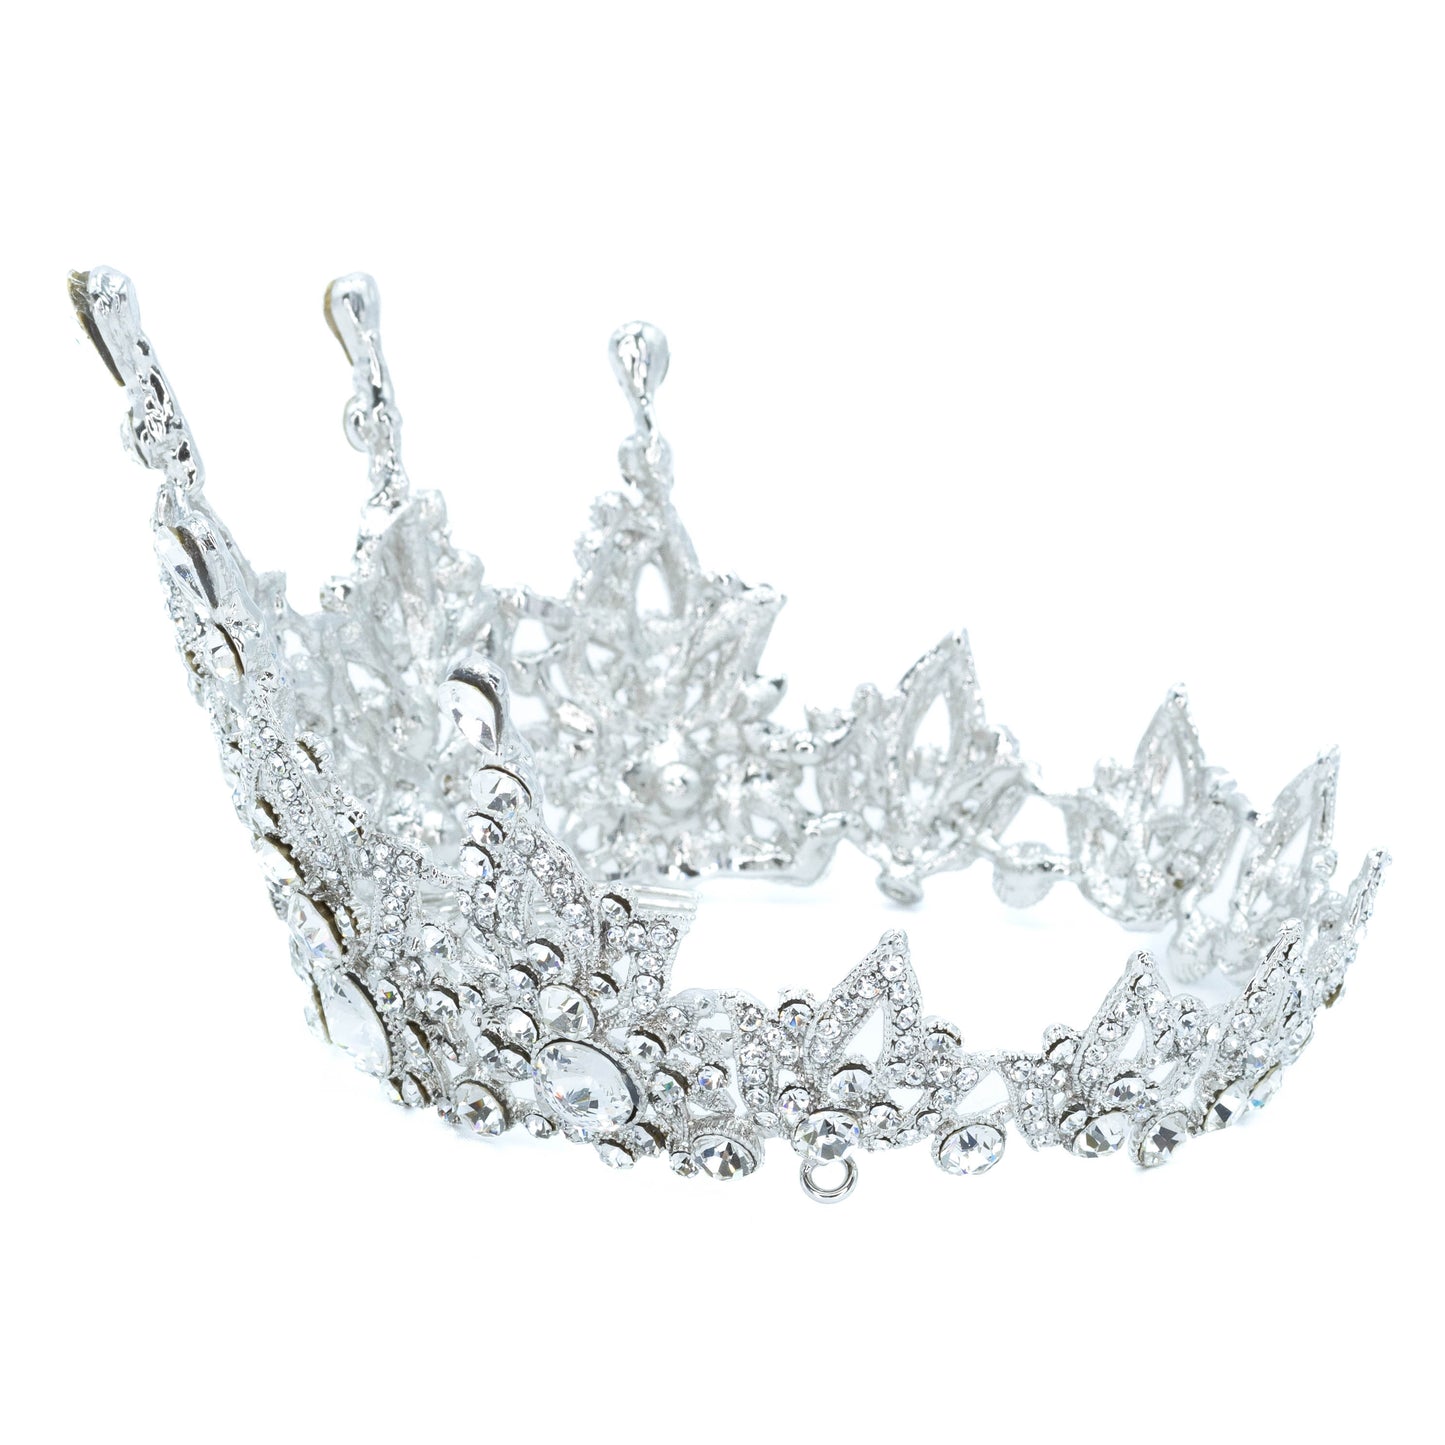 Fairy Tale Crown